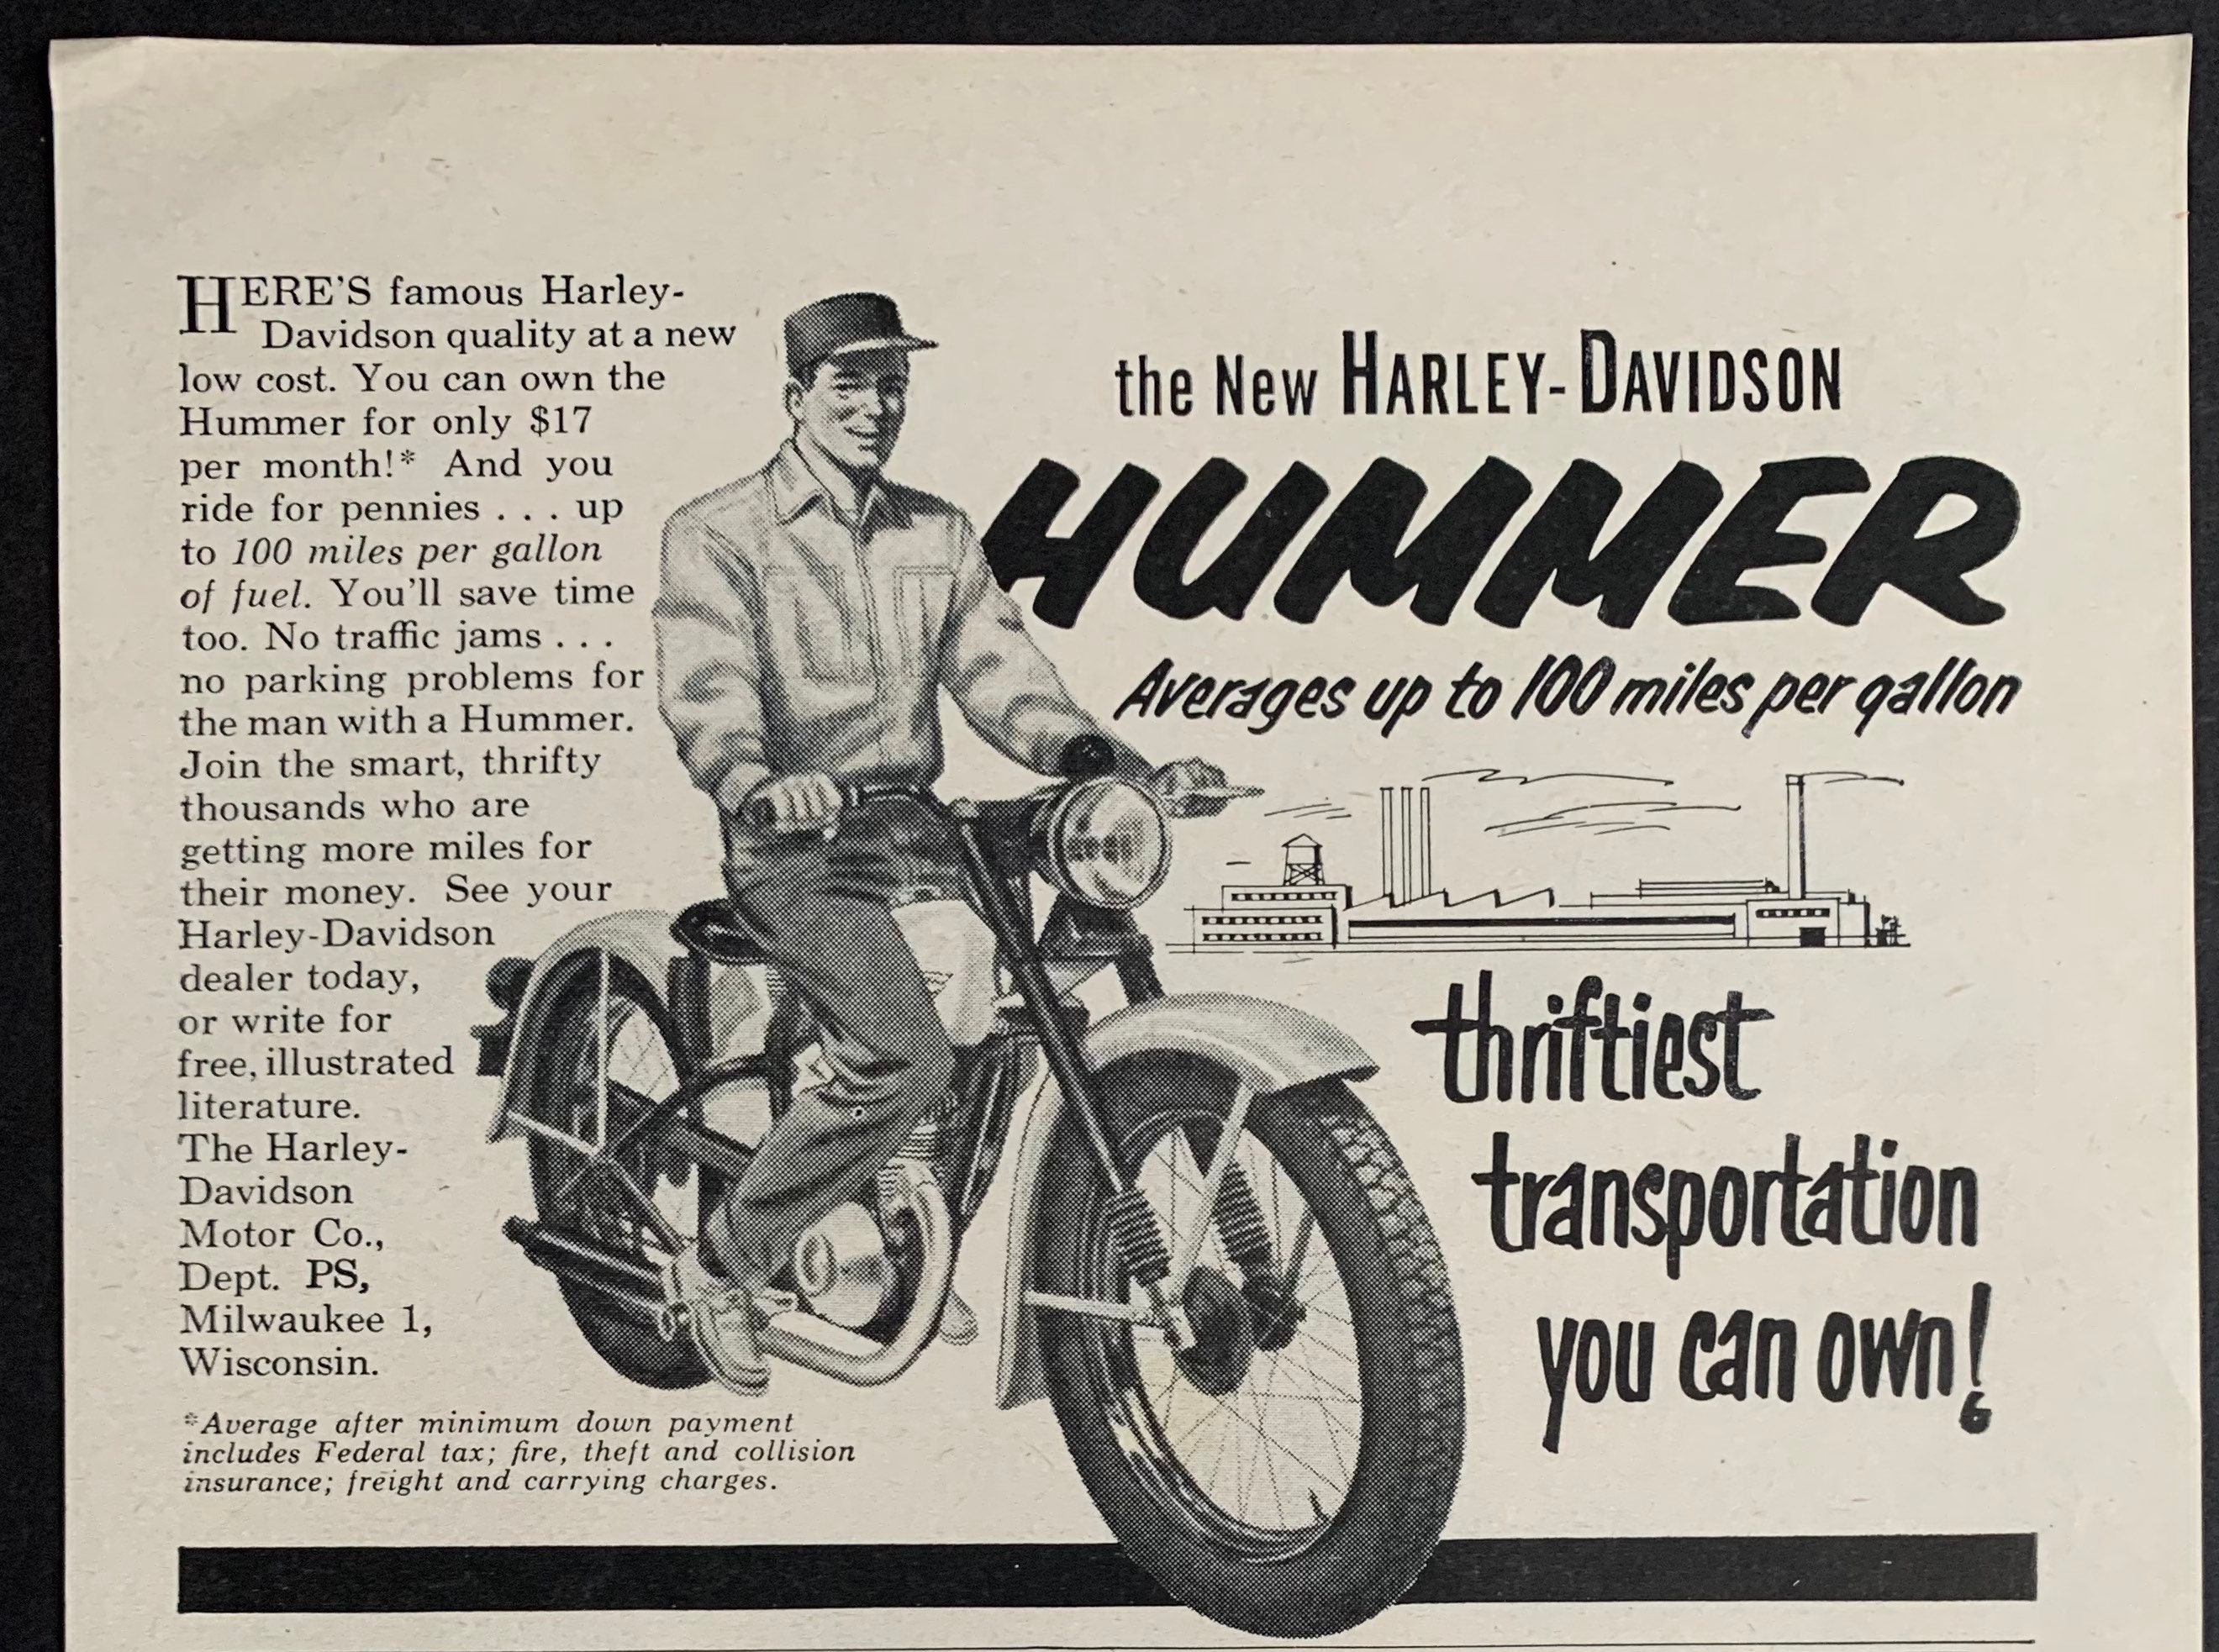 HARLEY DAVIDSON Hummer